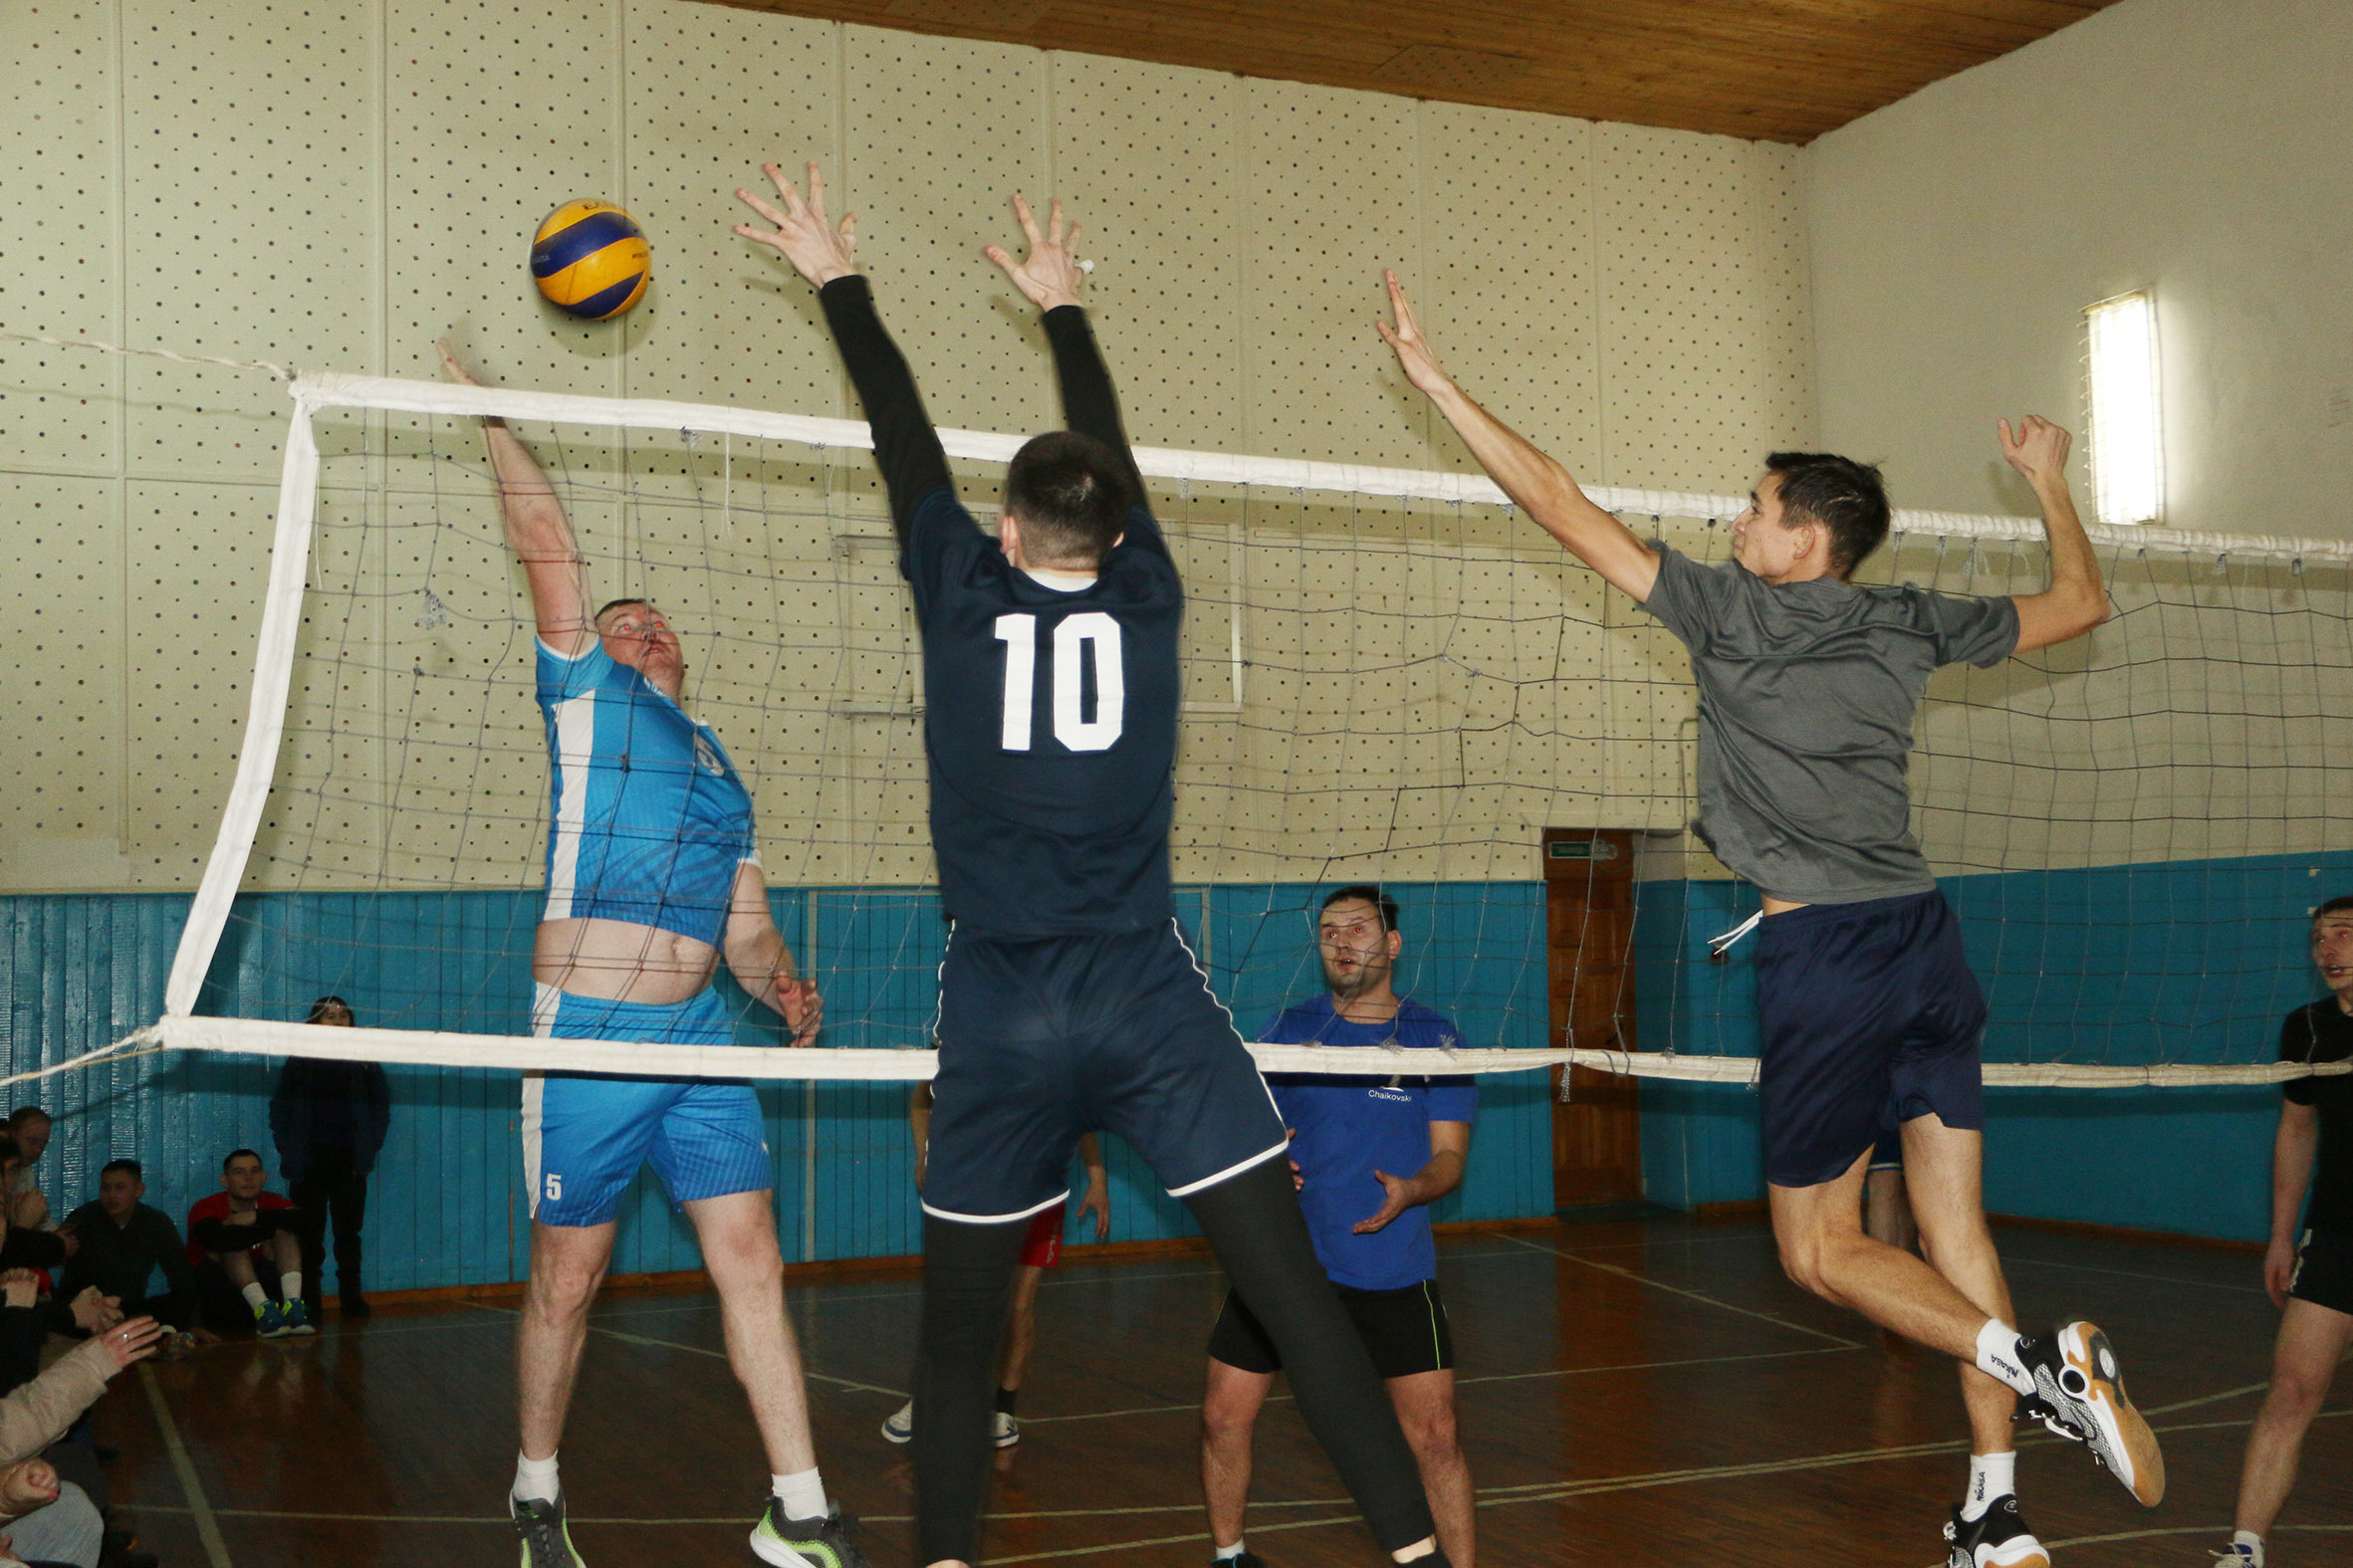 Удмуртский национально-культурный центр провел волейбольный турнир